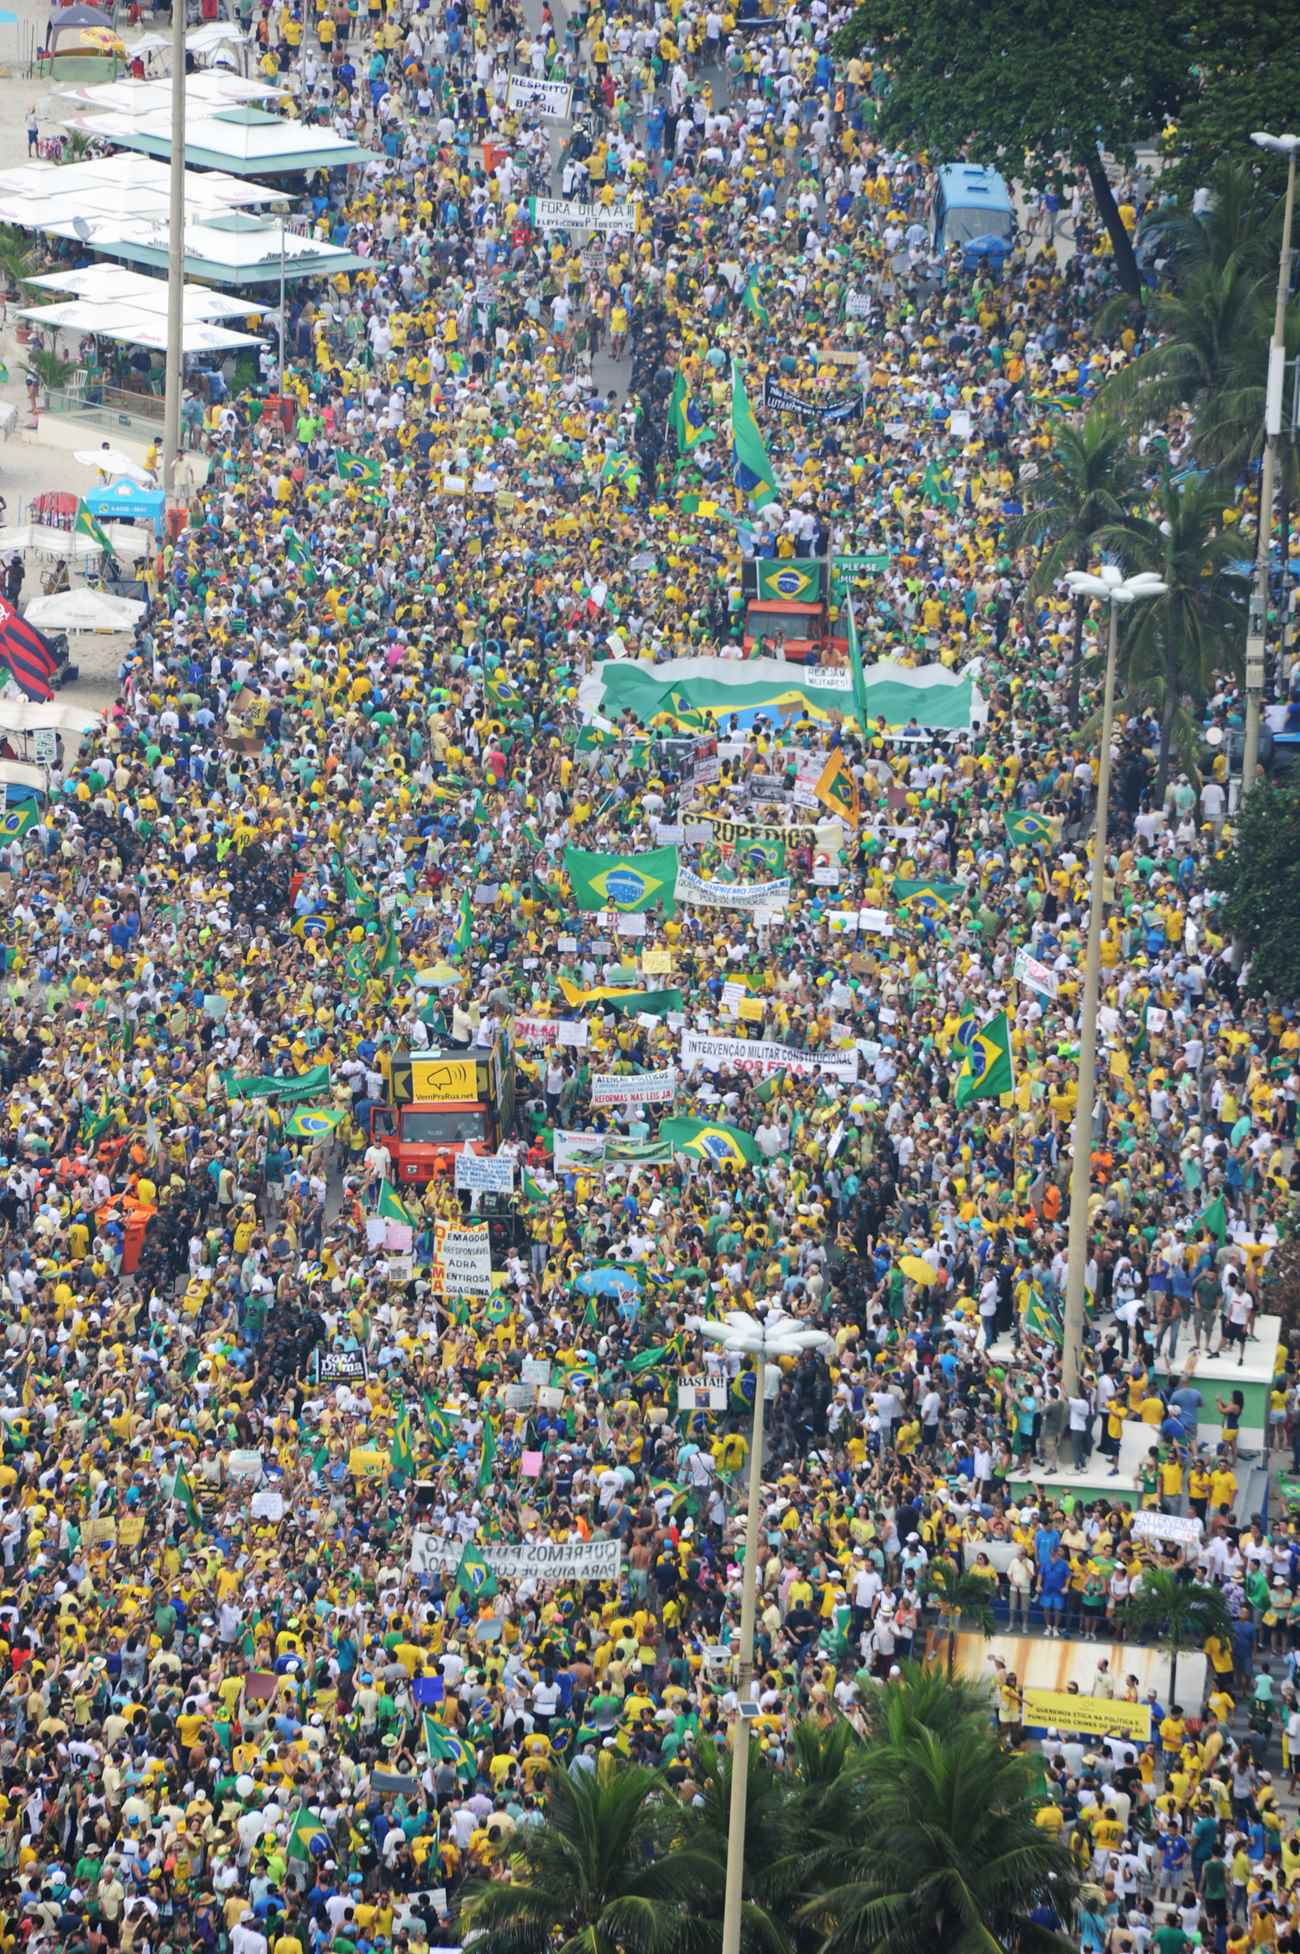 Manifestação pelo impeachment da presidenta Dilma Rousseff no Rio de Janeiro em 15 de março de 2015. Foto: Tasso Marcelo / Fotos Públicas